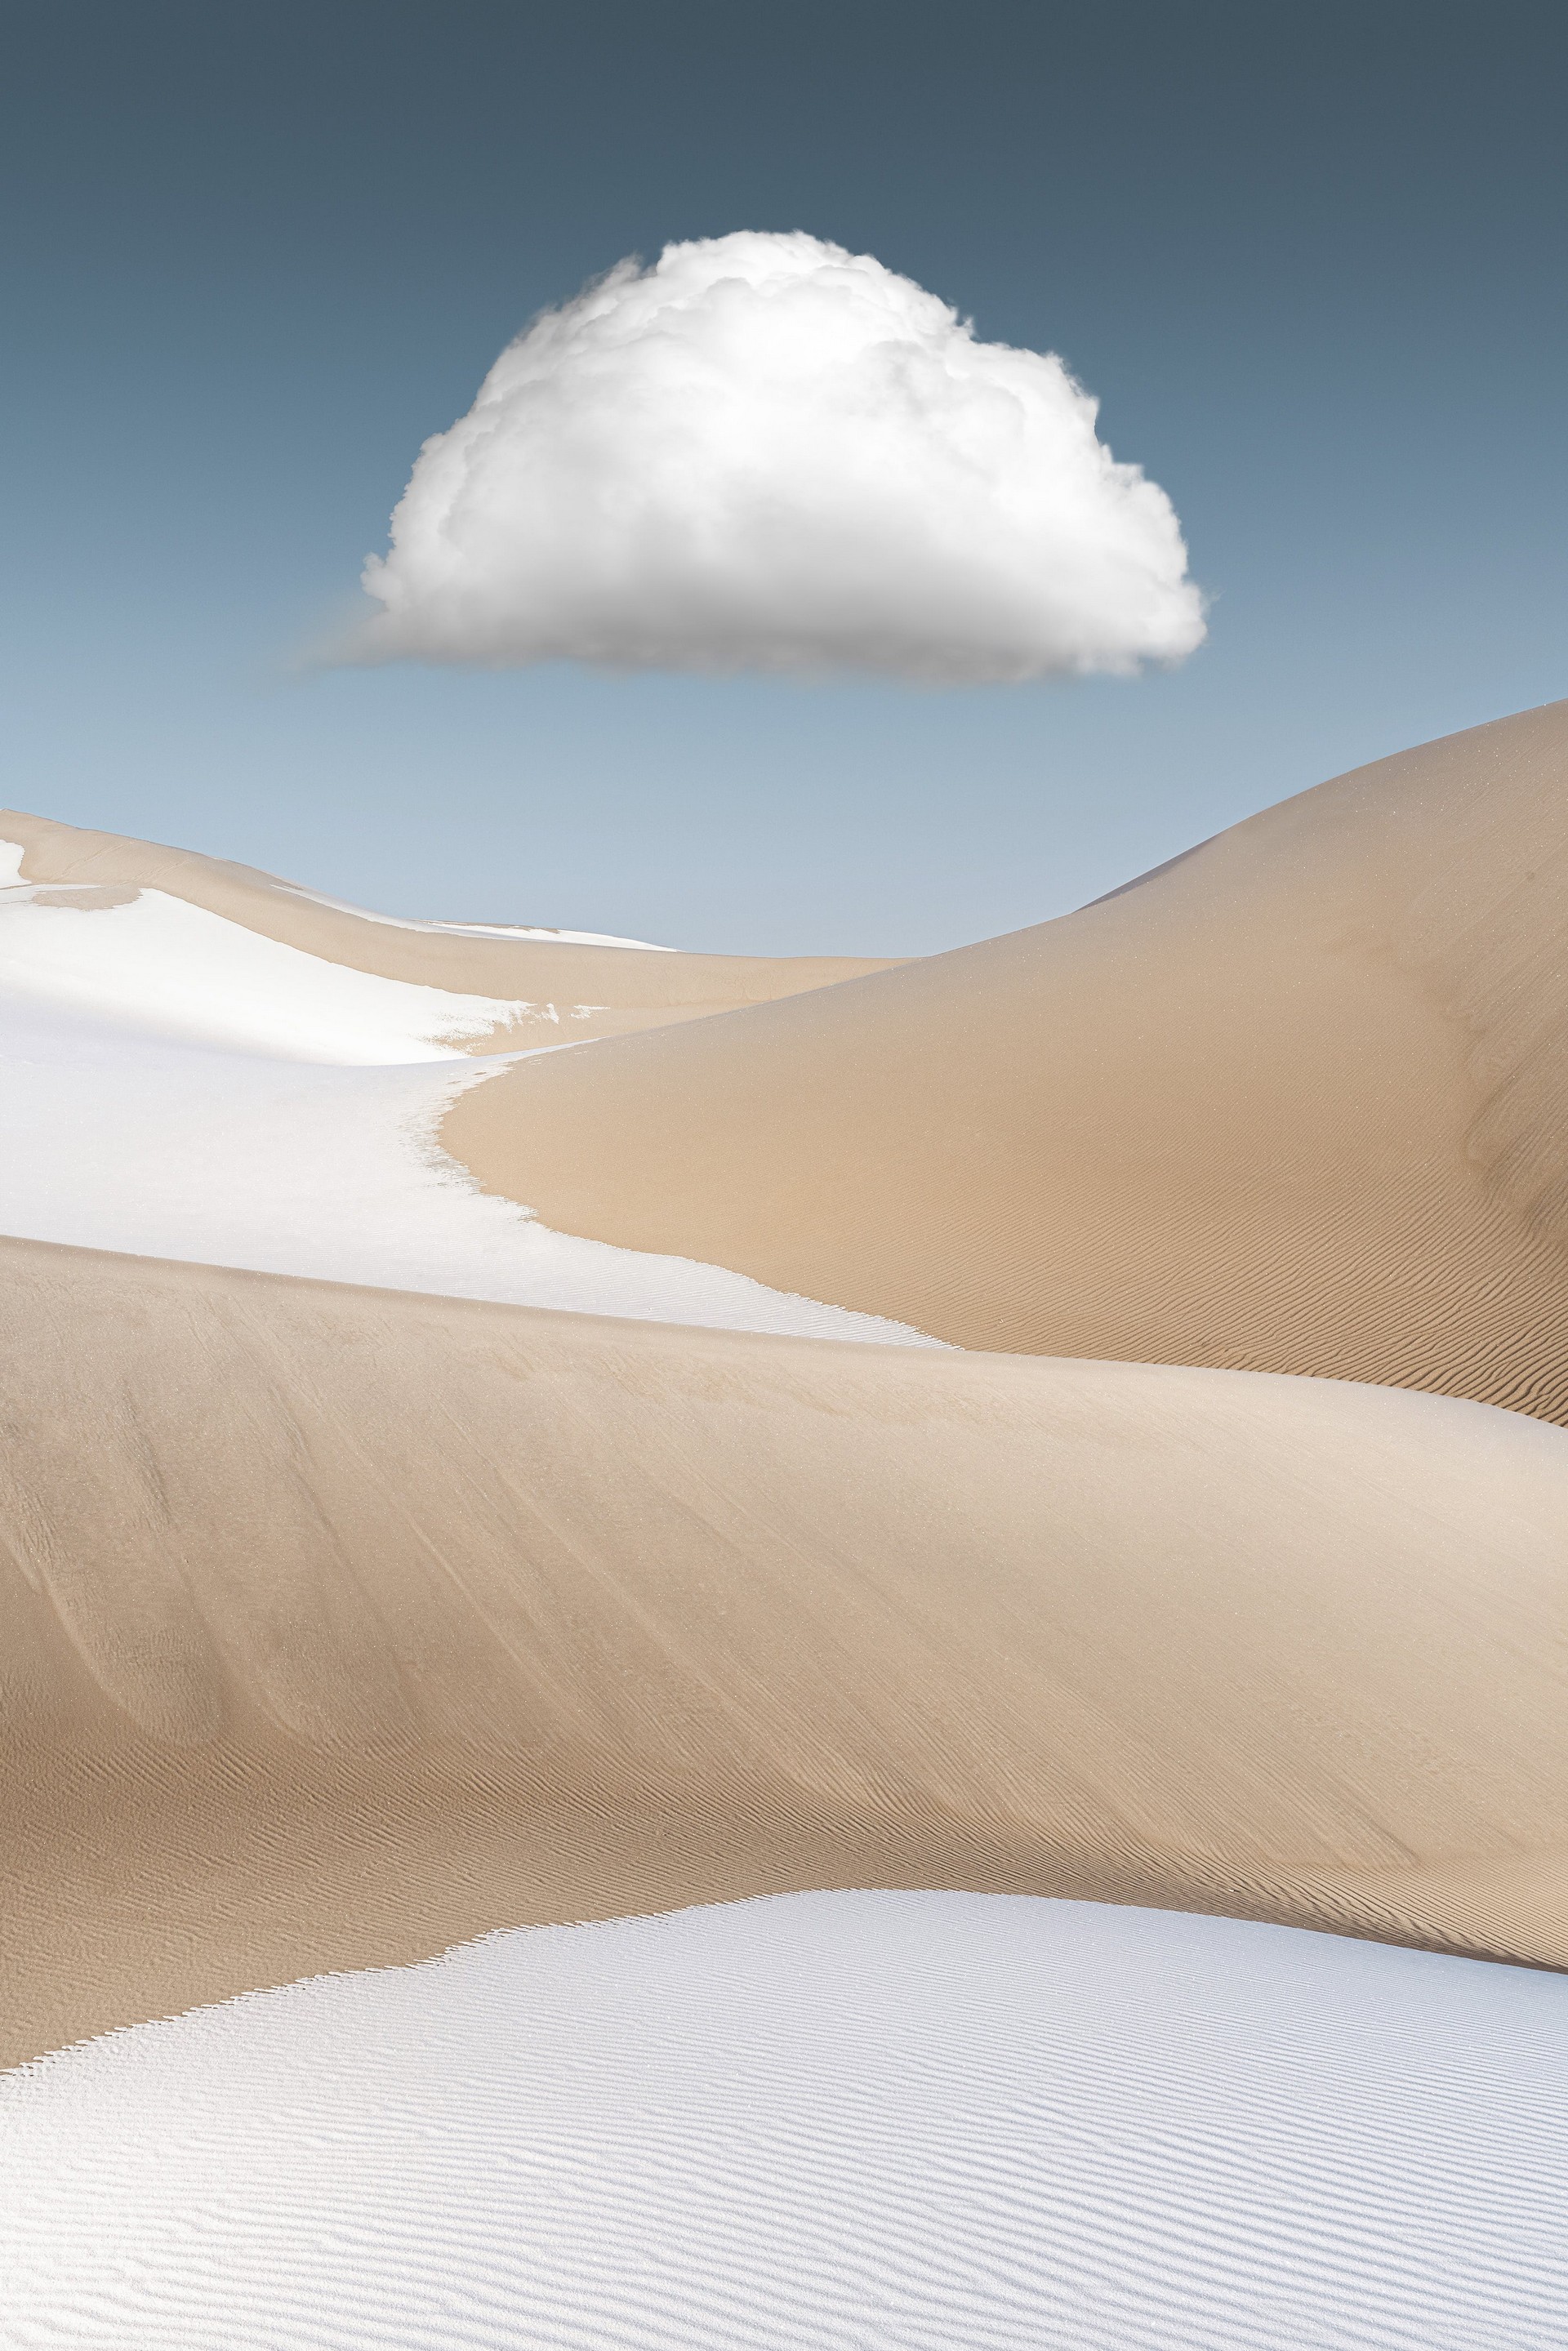 2 место в номинации Пейзажный фотограф года 2019. Облако над песками и снегом в пустыне Бадын-Джаран, Китай. Автор Ян Гуан